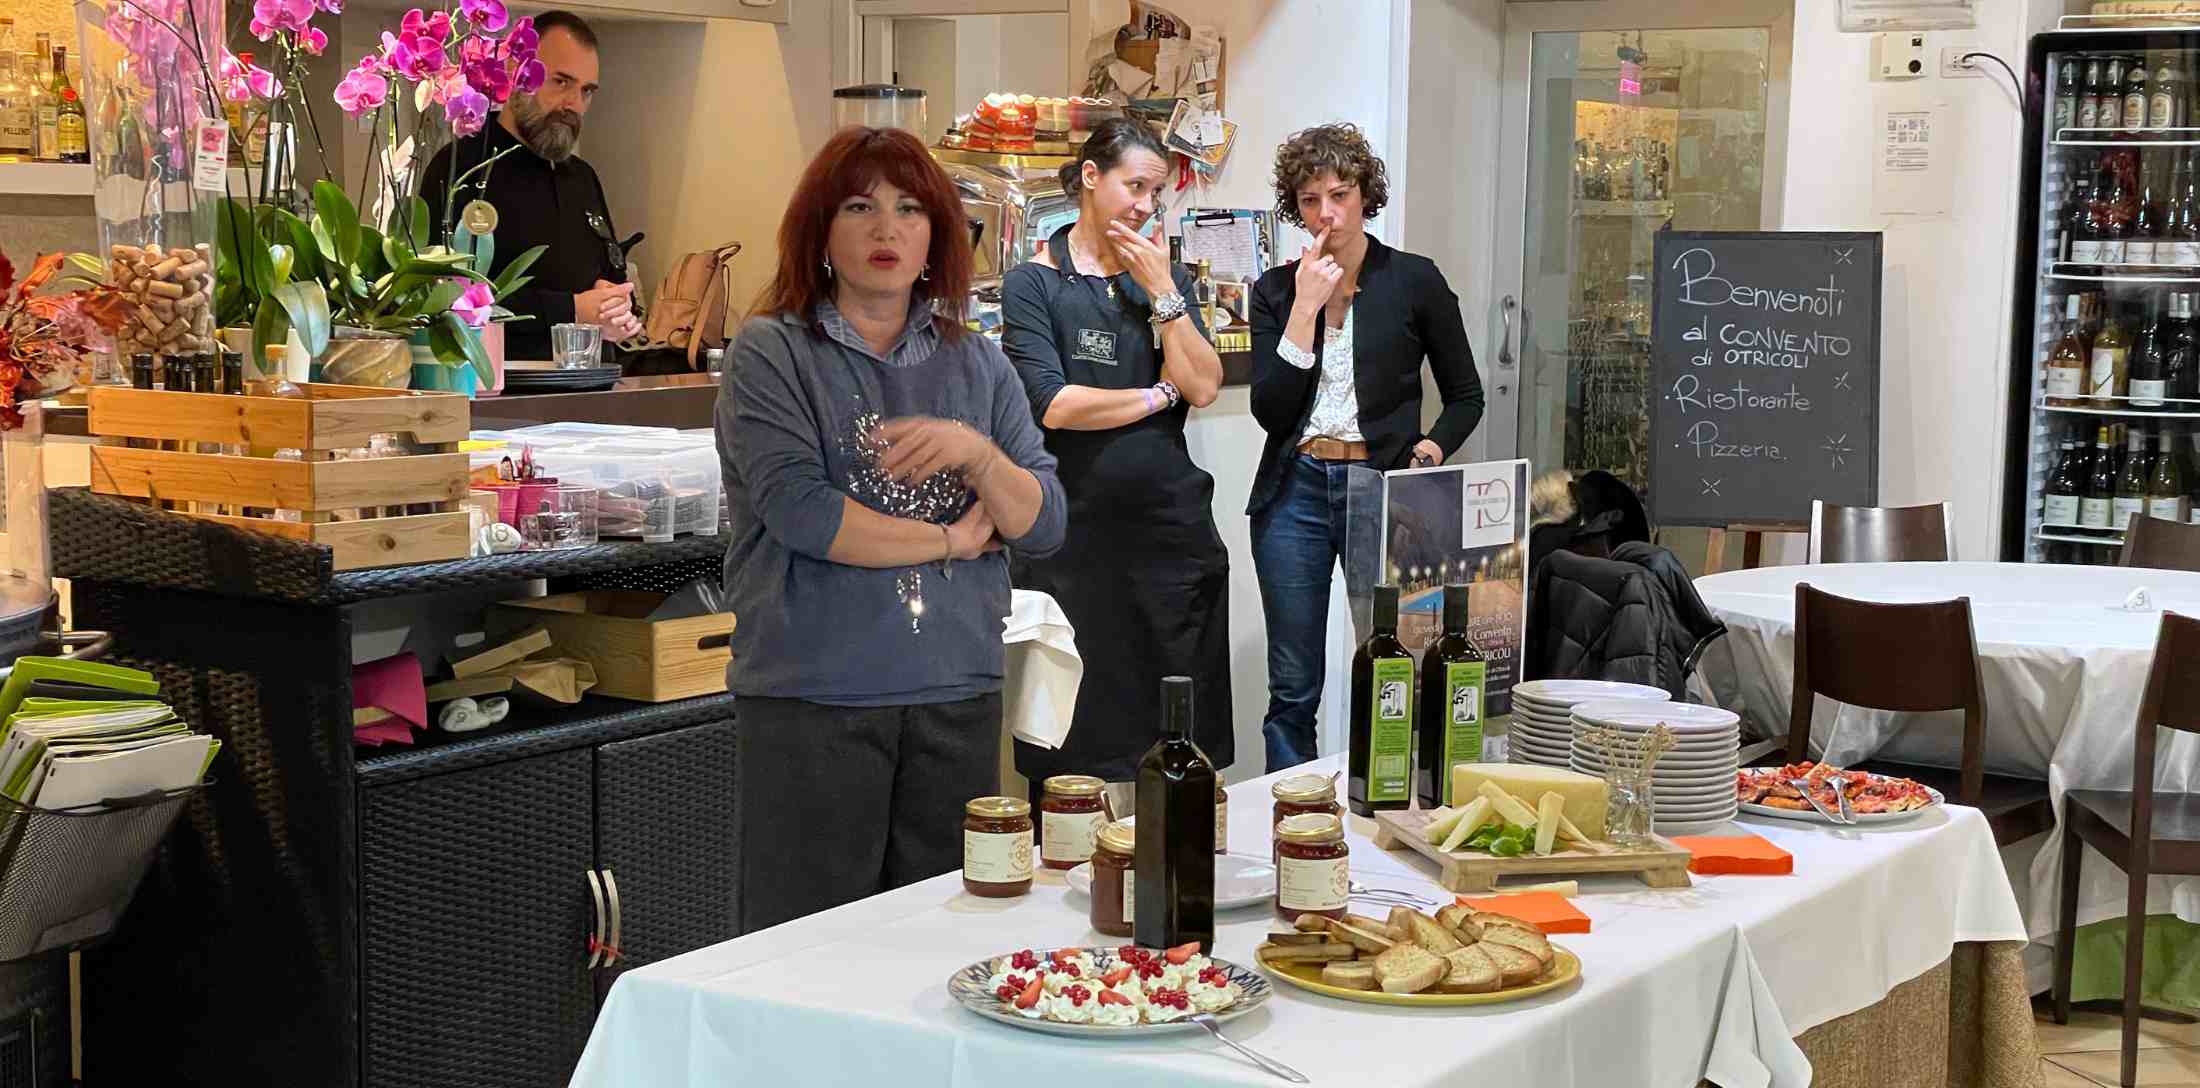 Presentazione di Mielita durante l'evento Degusta Otricoli presso il ristorante Il Convento